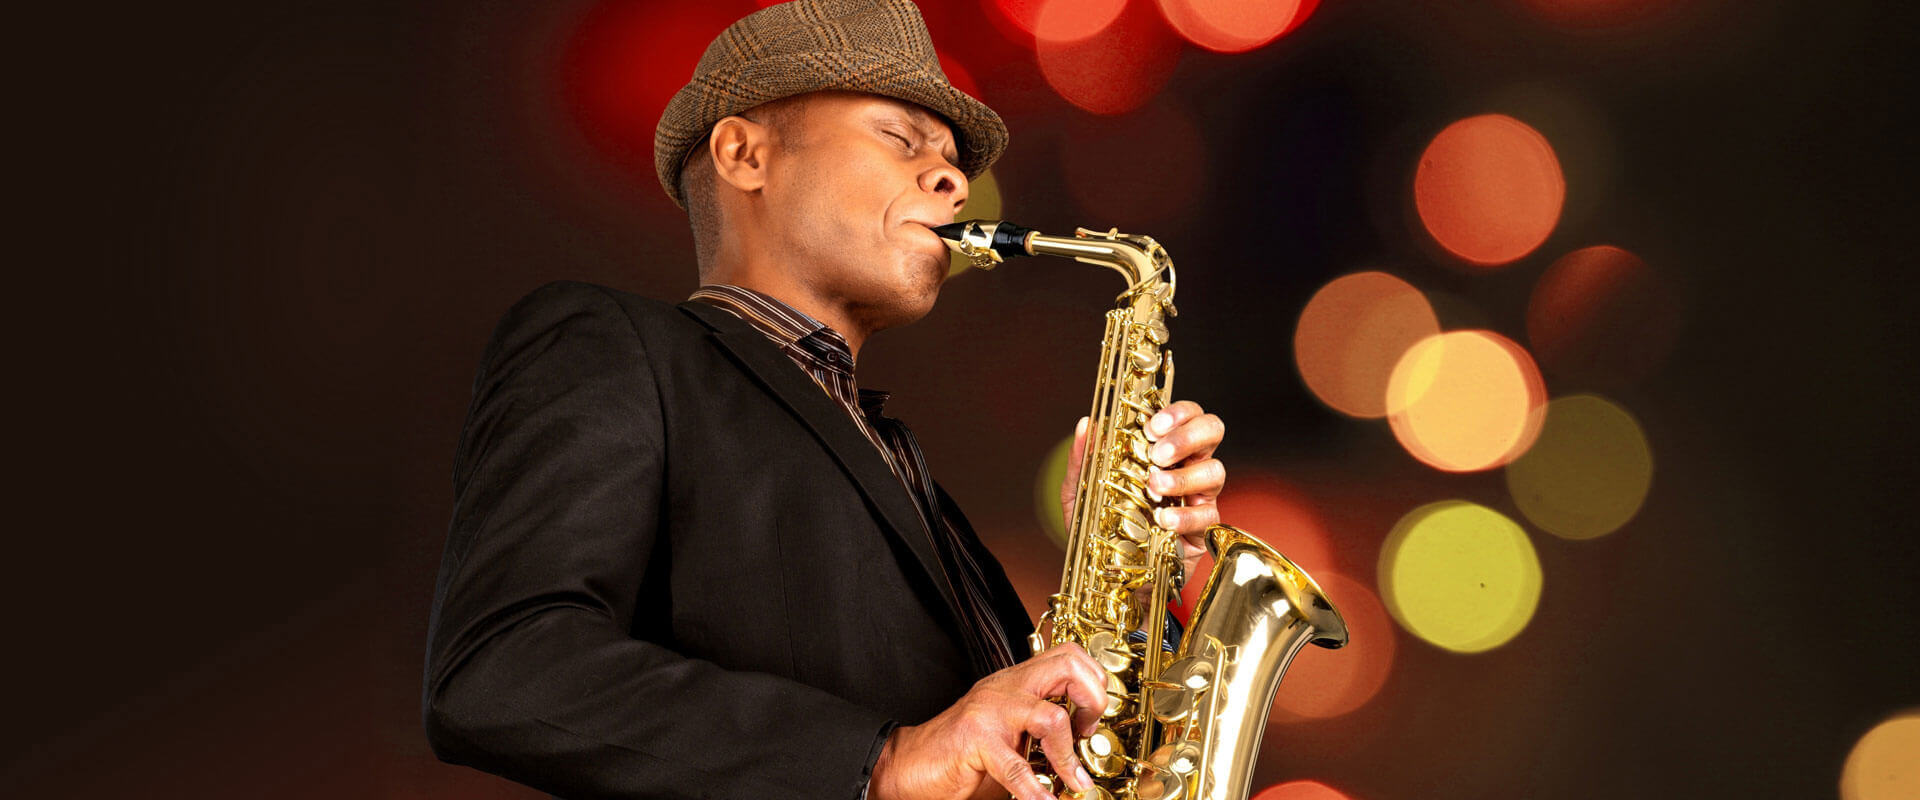 Saxophone Lessons Claremont, CA